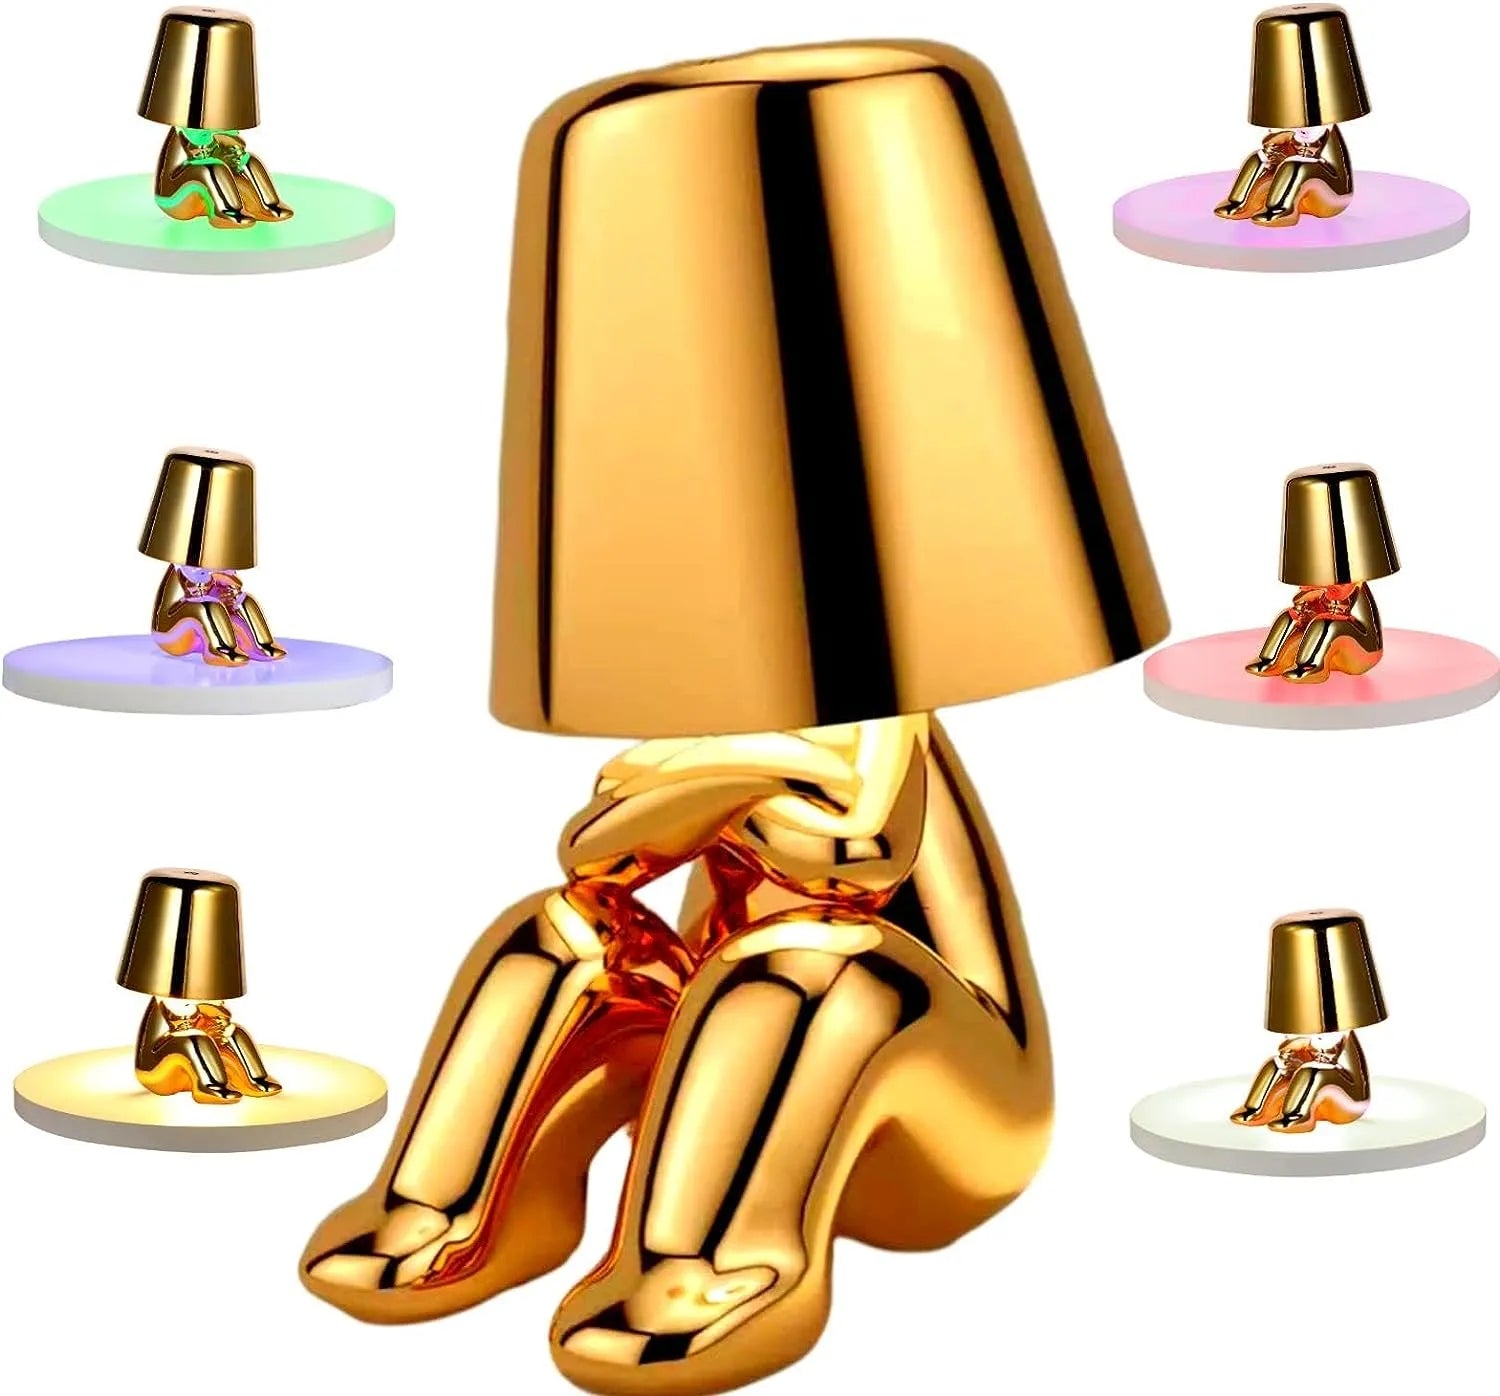 Original Bedside Lamp - Gold Thinker